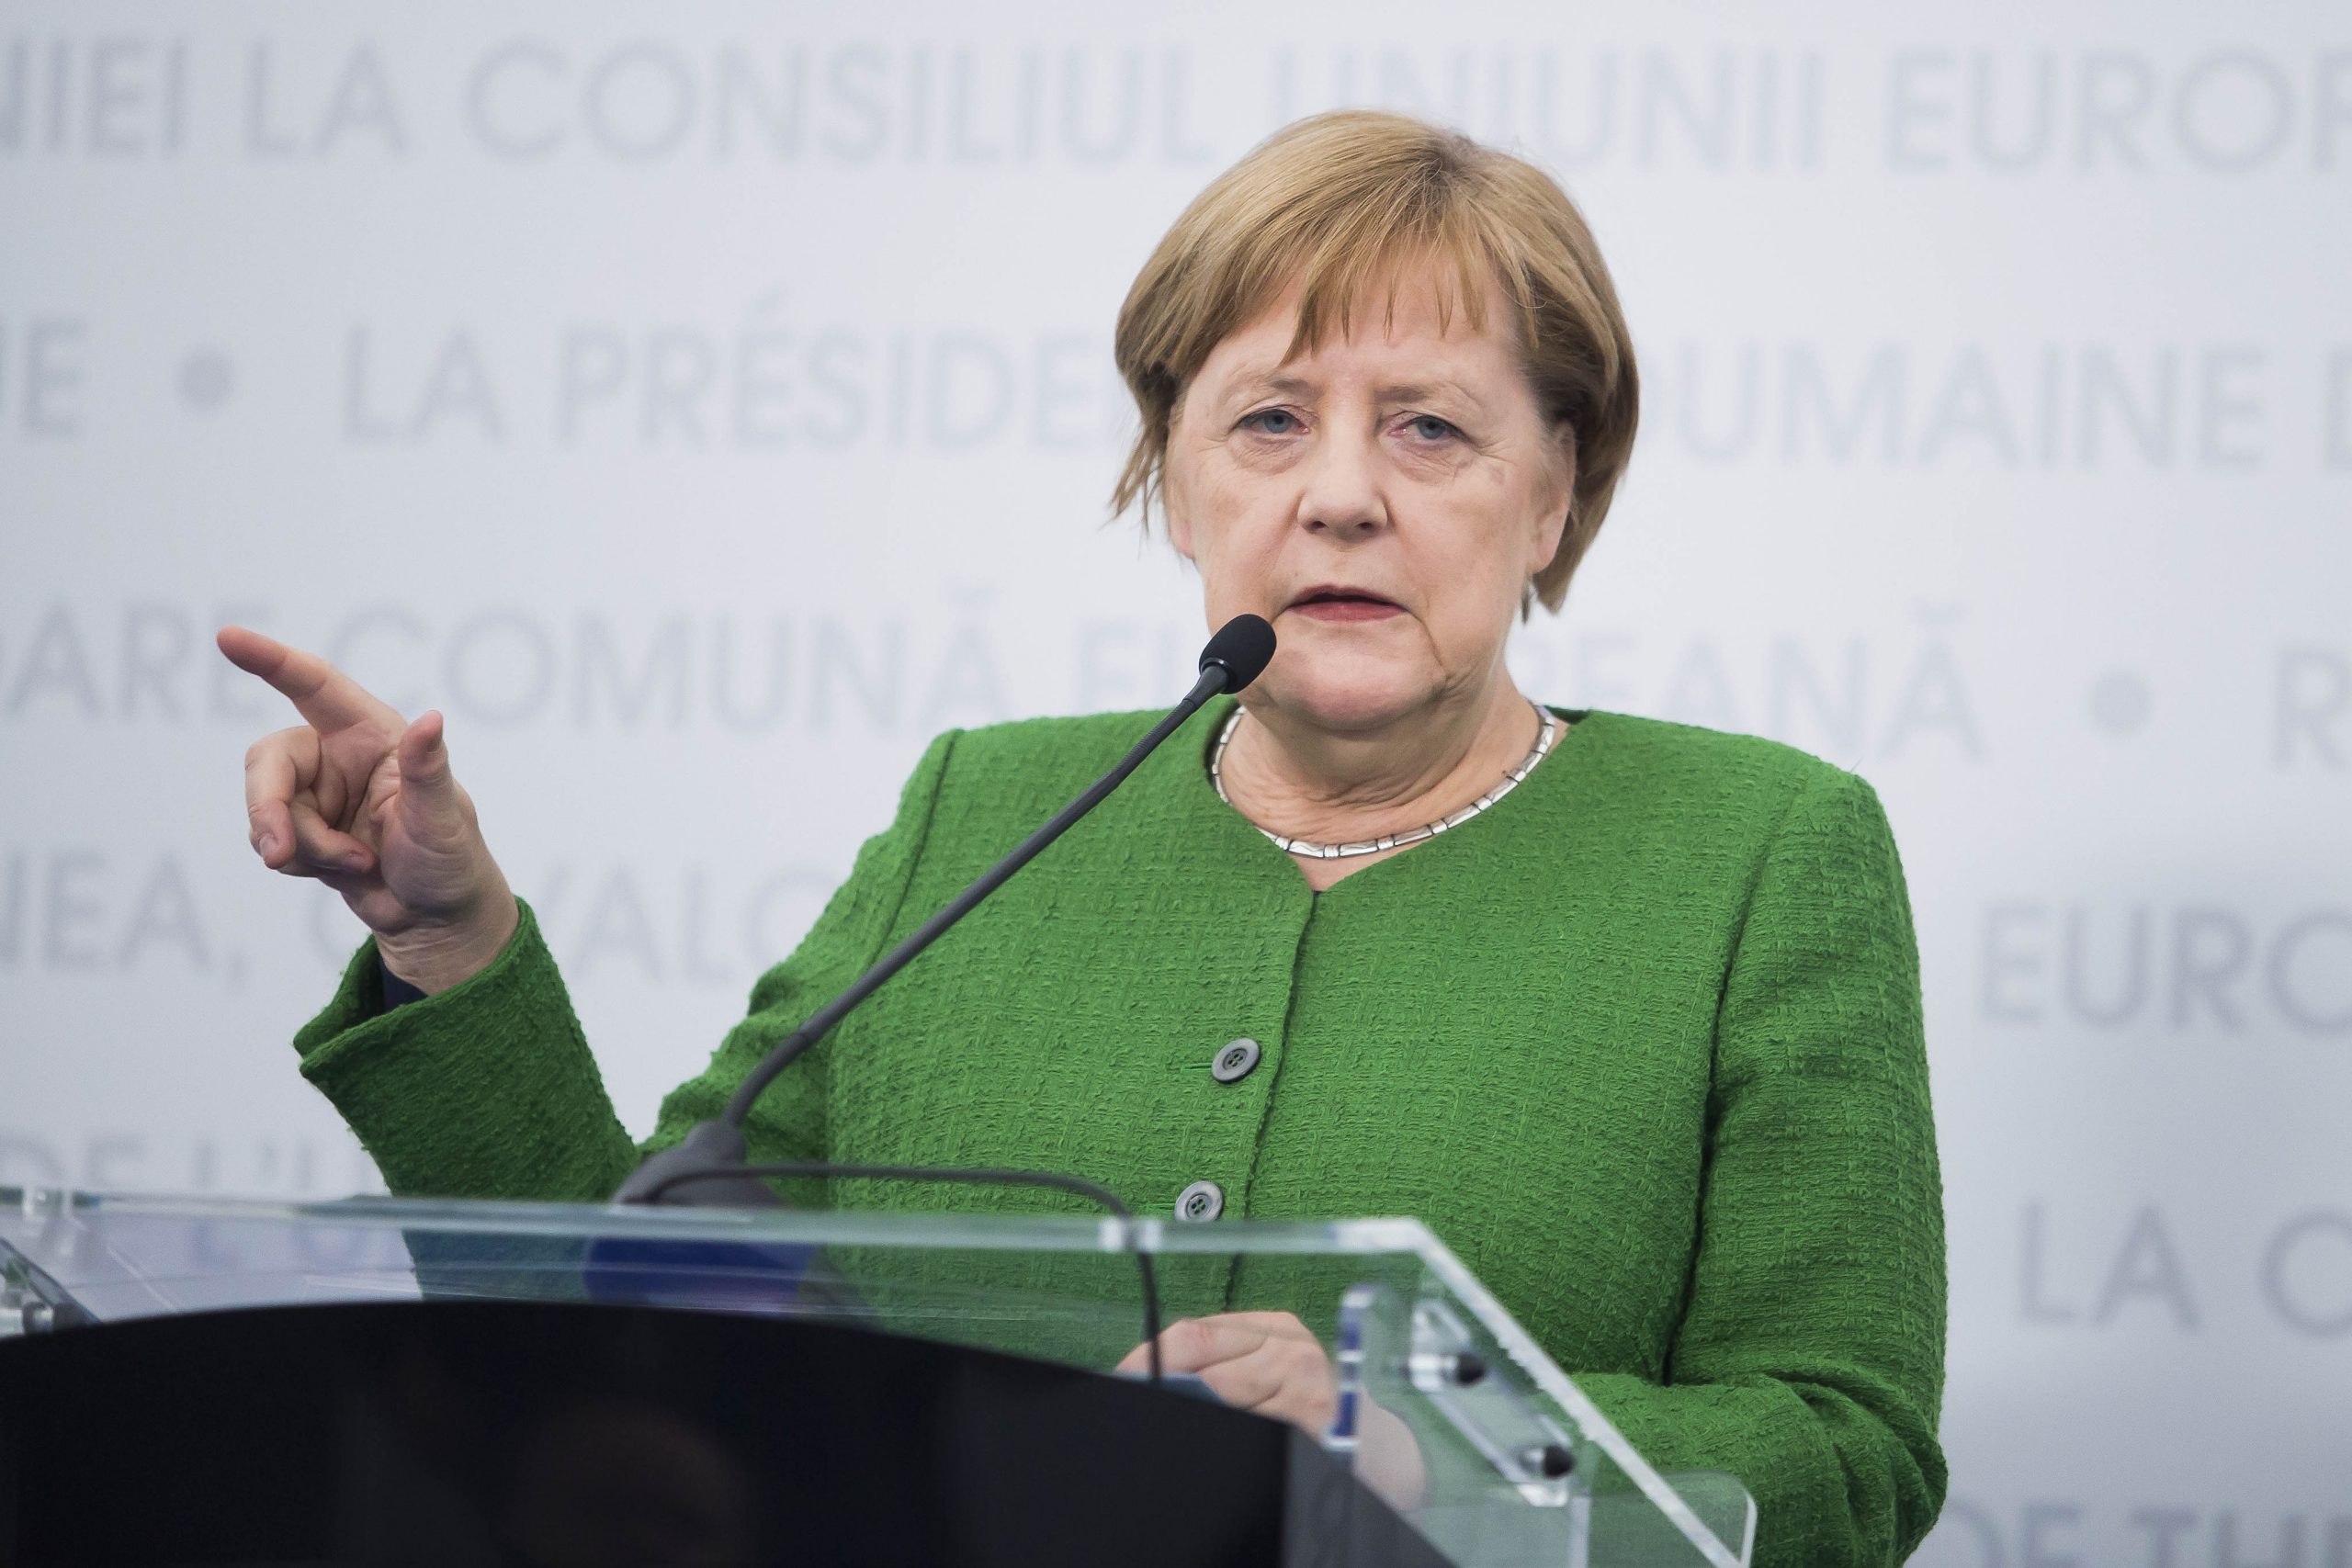 Angela Merkel la Sibiu, 9 mai 2019. Inquam Photos / Ovidiu Dumitru Matiu